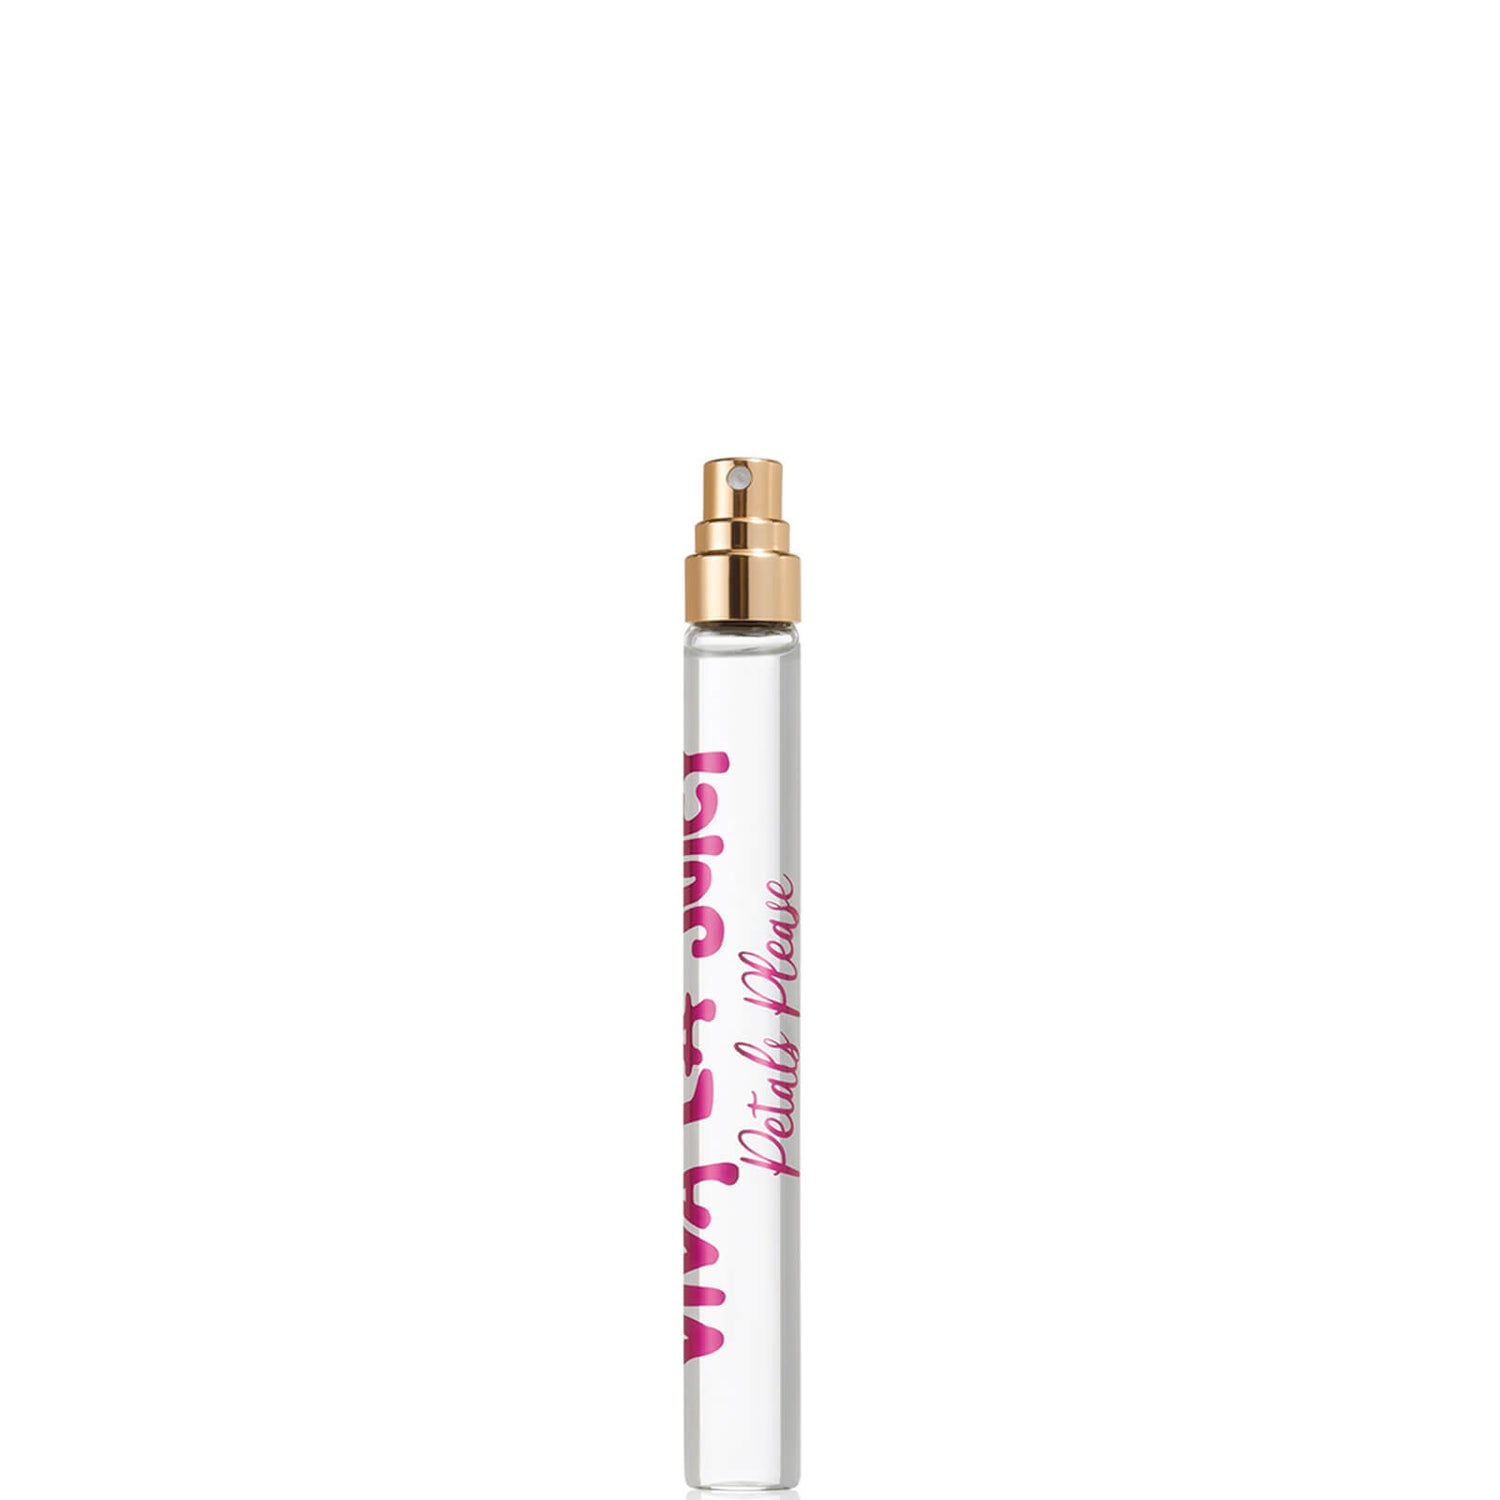 Juicy Couture Viva La Juicy Petals Please Eau de Parfum Pen Spray 10ml ...